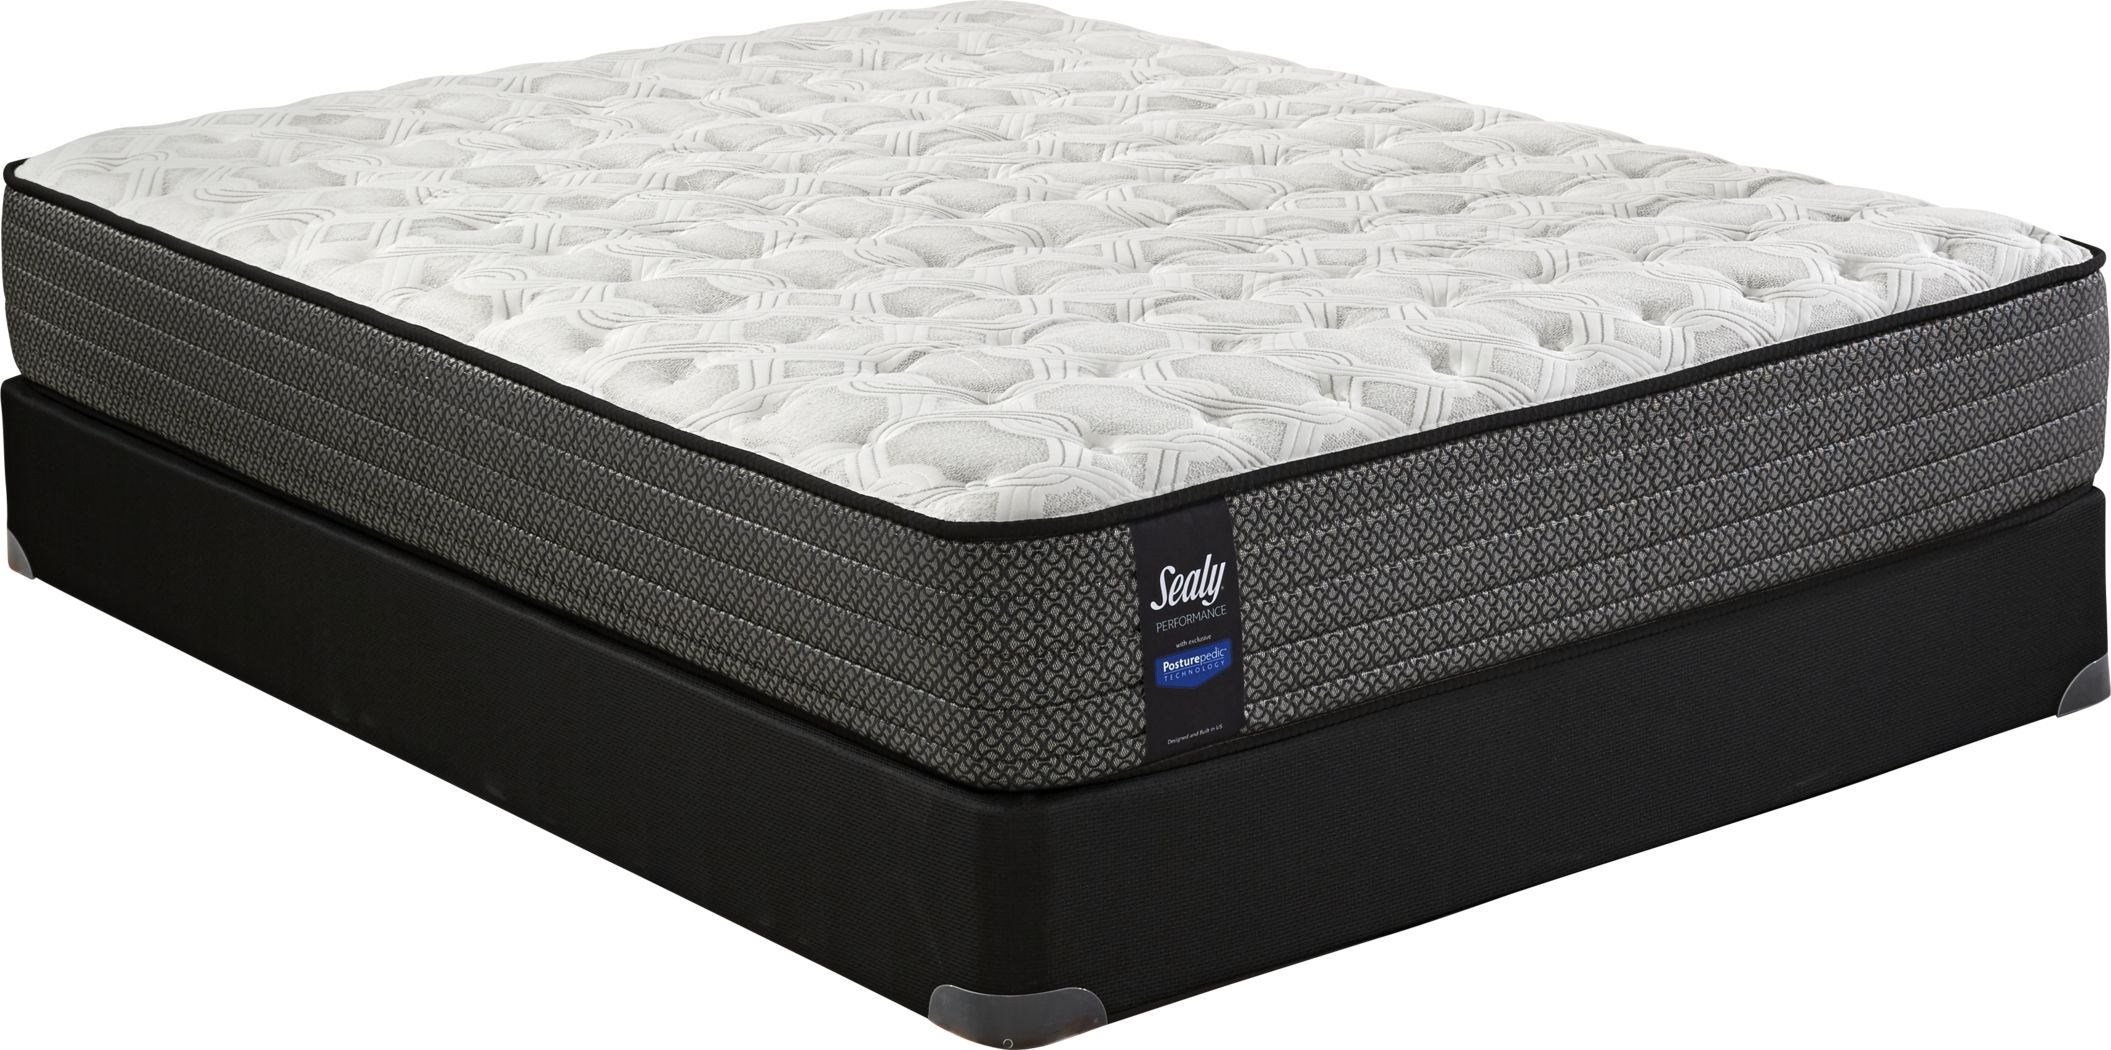 sealy queen mattress best price